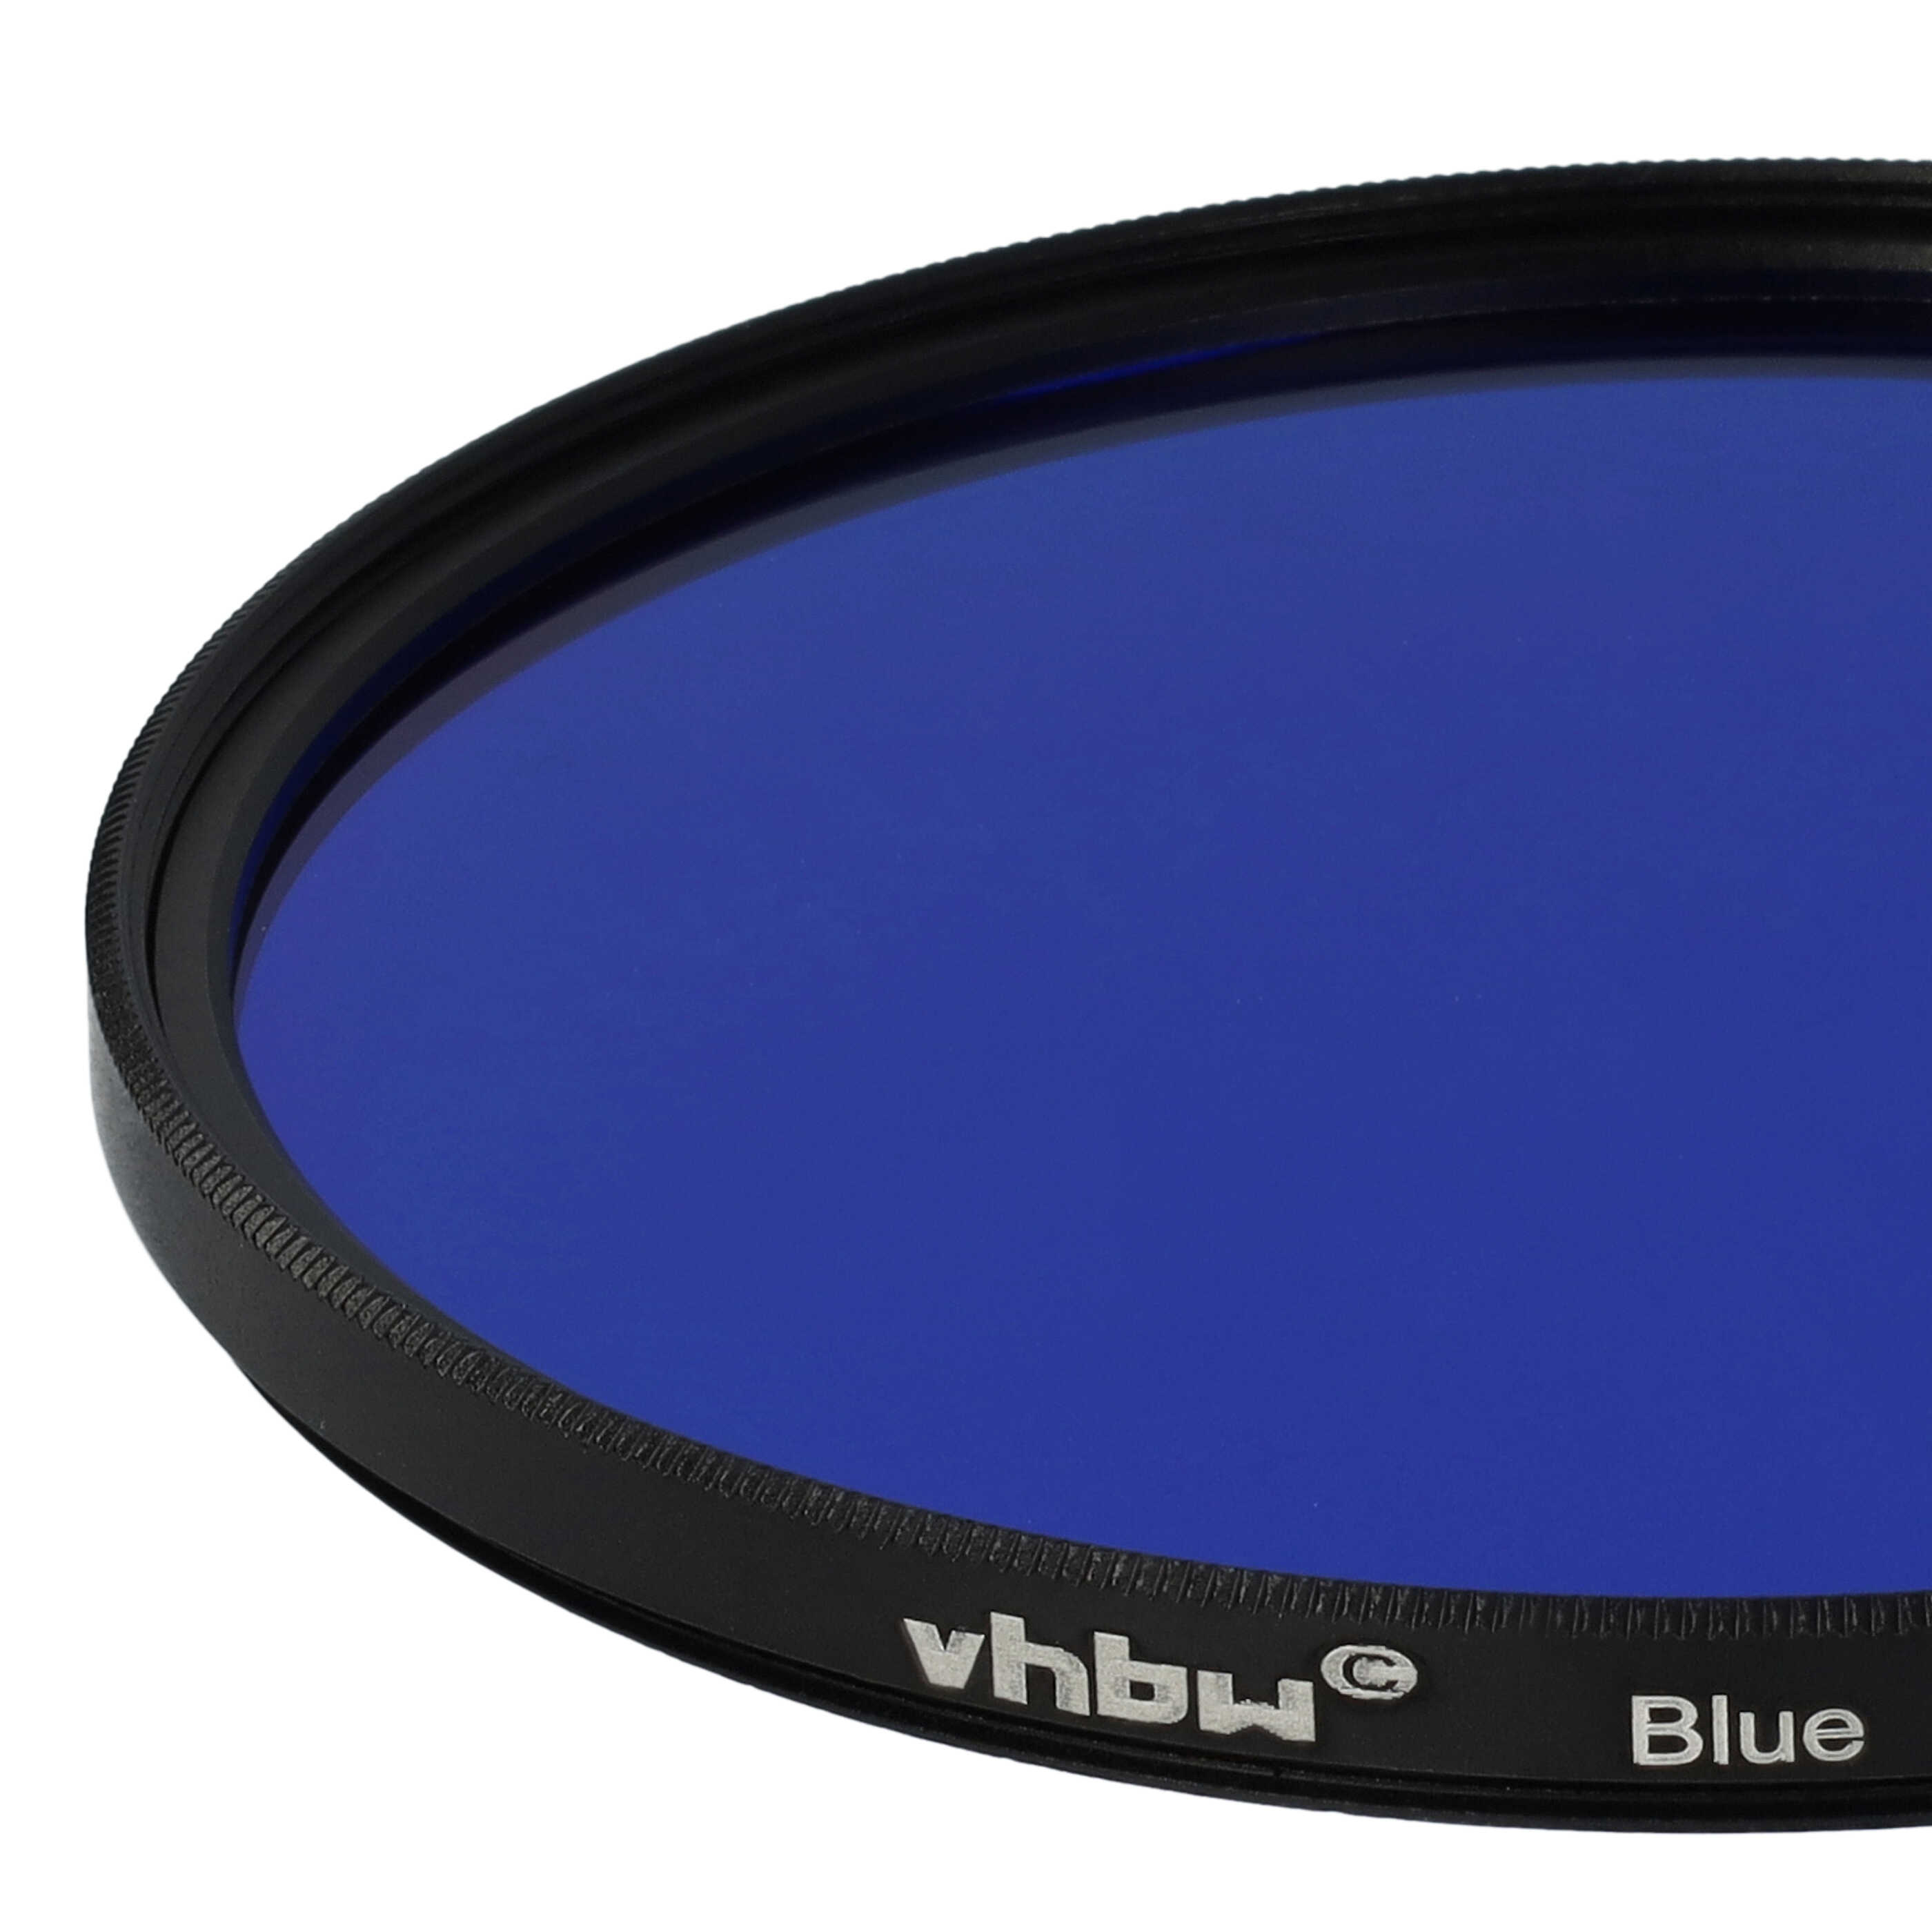 Filtro colorato per obiettivi fotocamera con filettatura da 77 mm - filtro blu